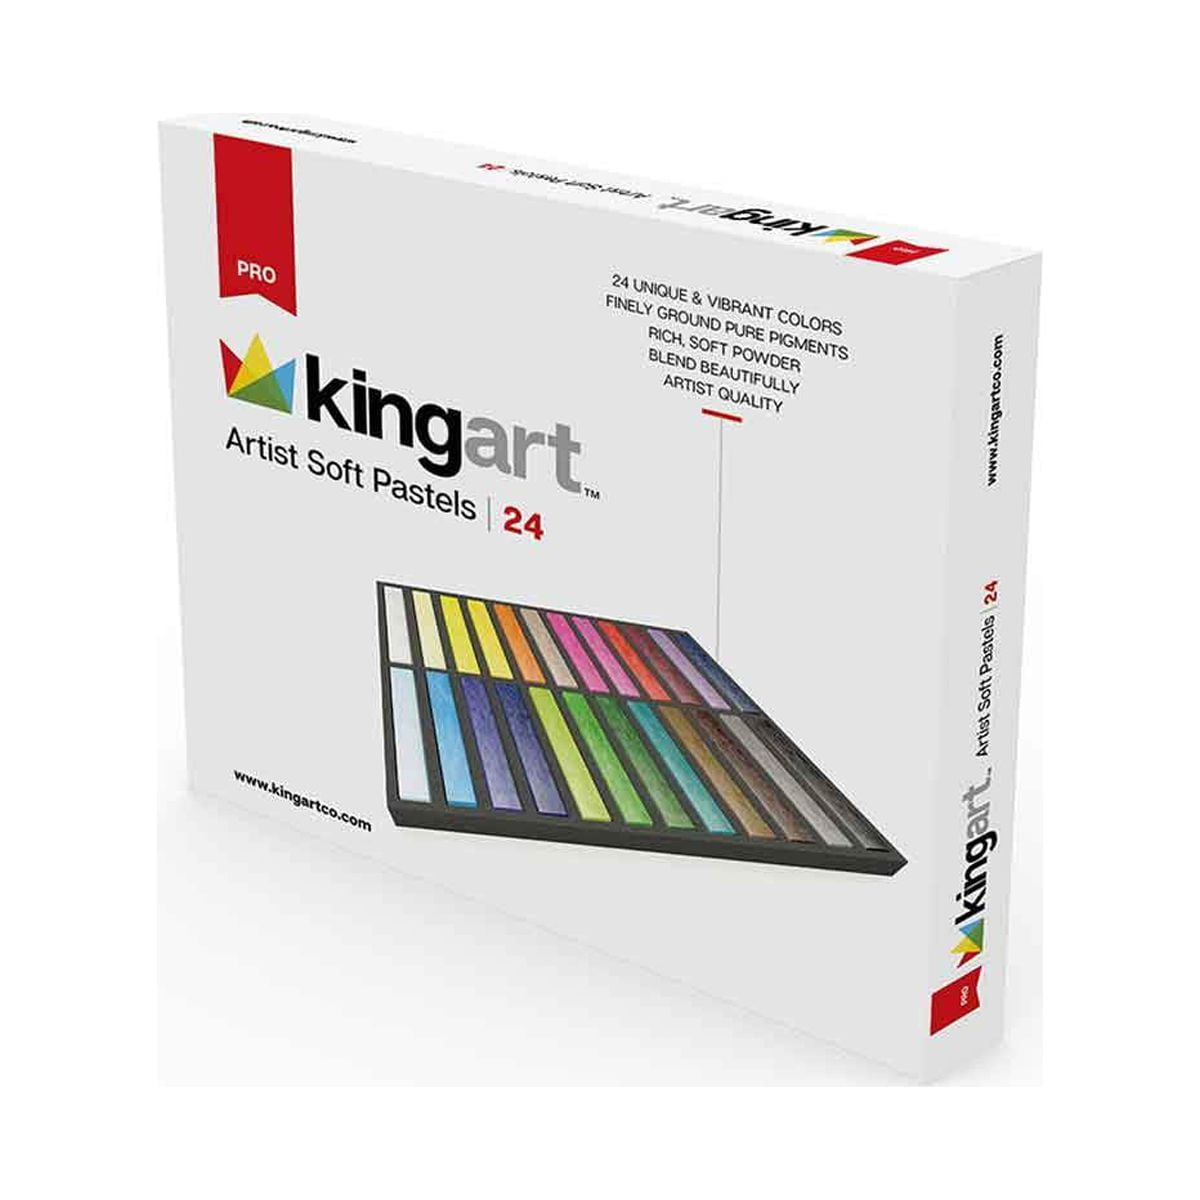 KINGART® PRO Artist Soft Pastels, Set of 24 Unique Colors